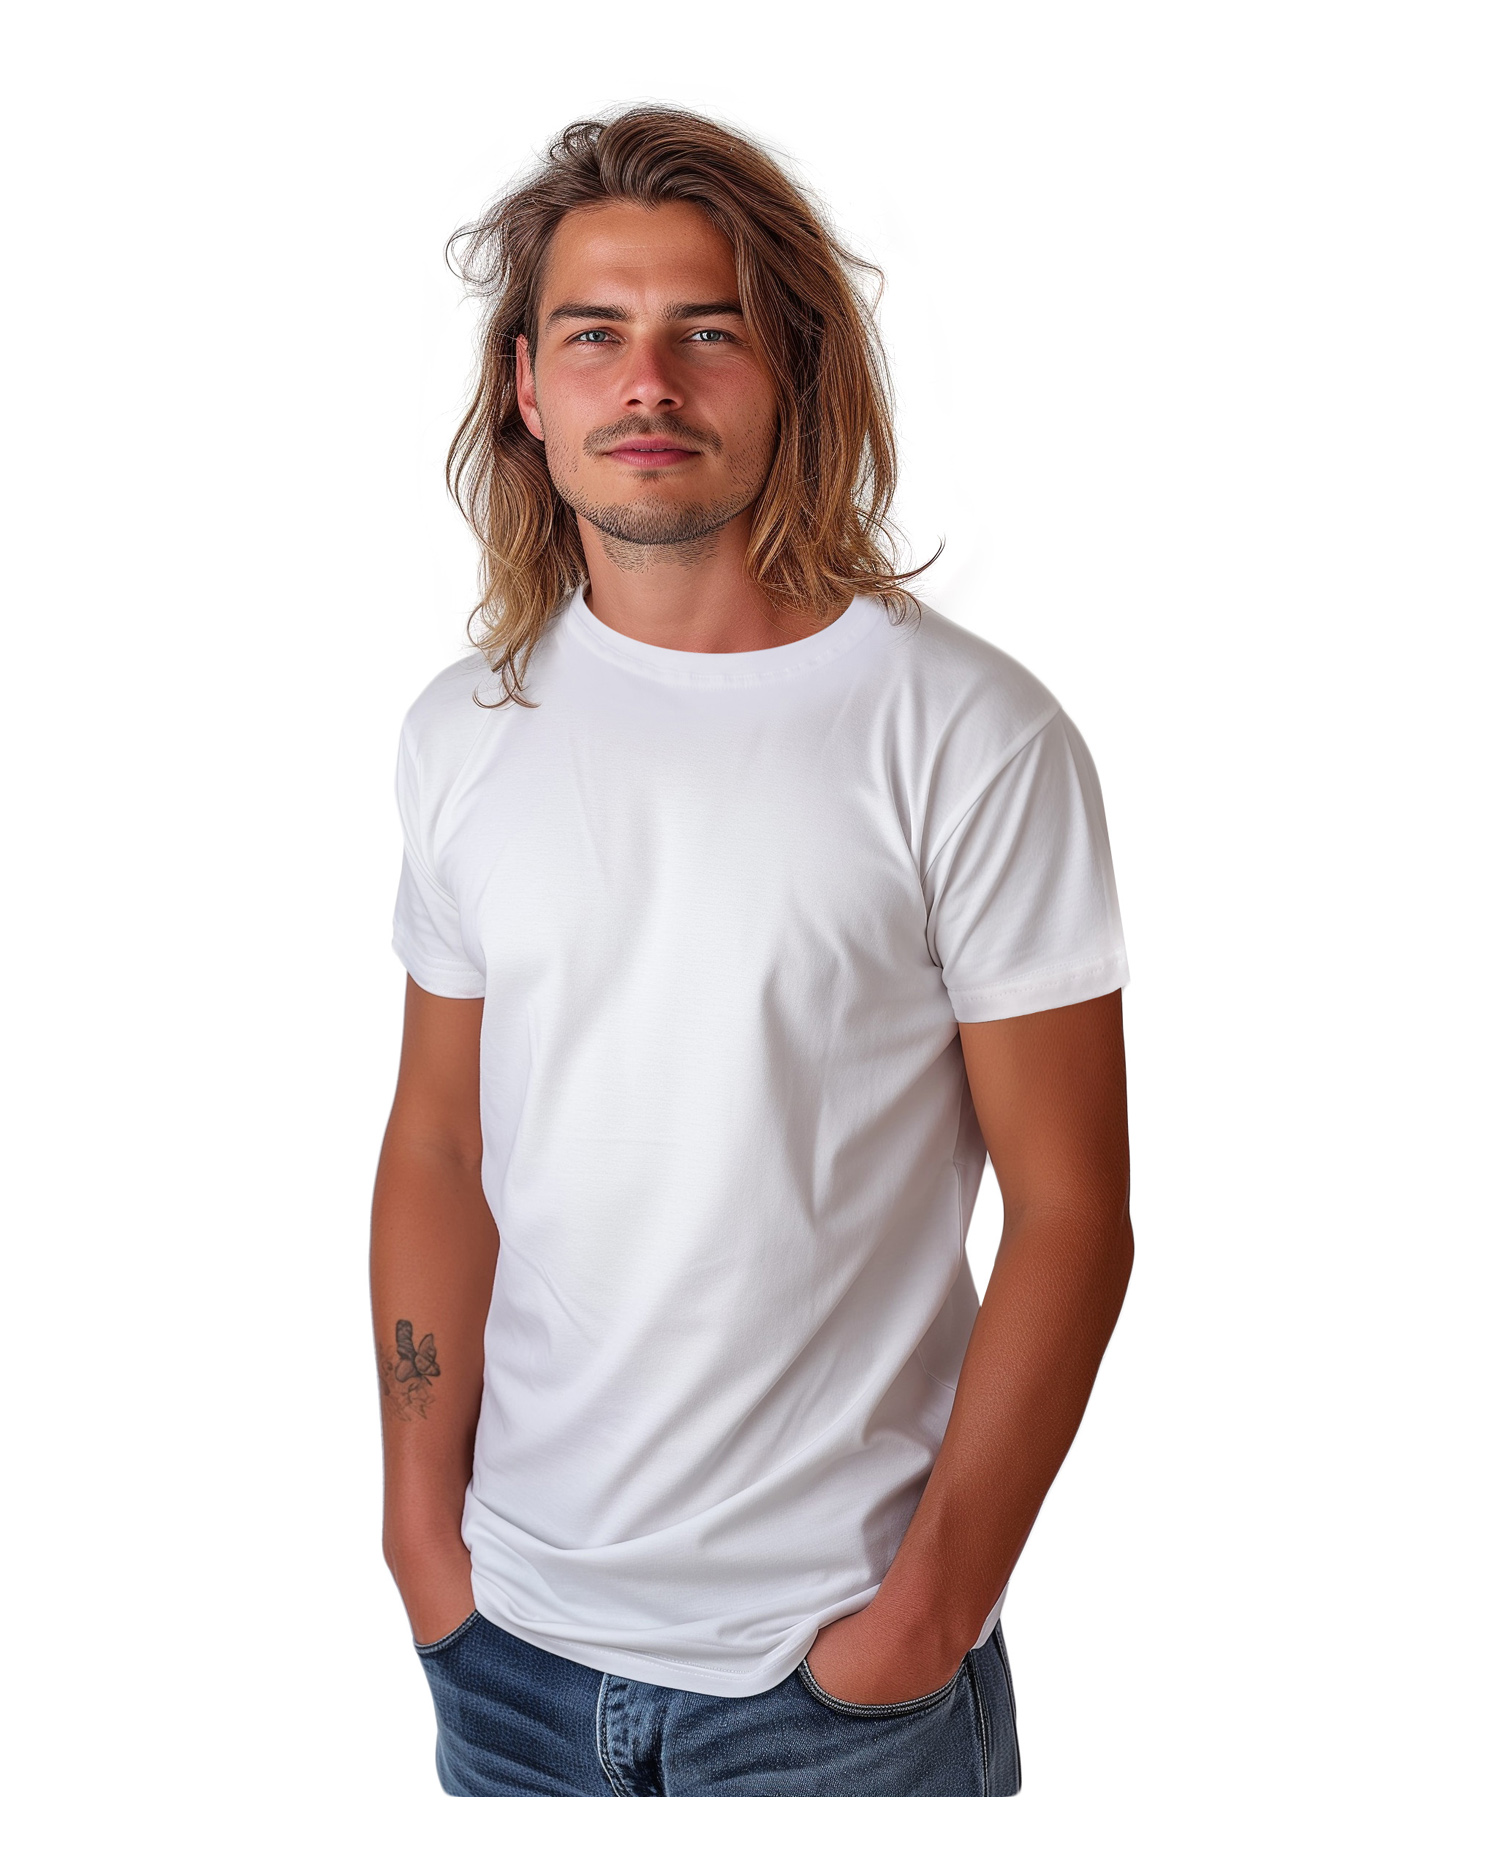 Men’s T-shirt Marek, short sleeve, white